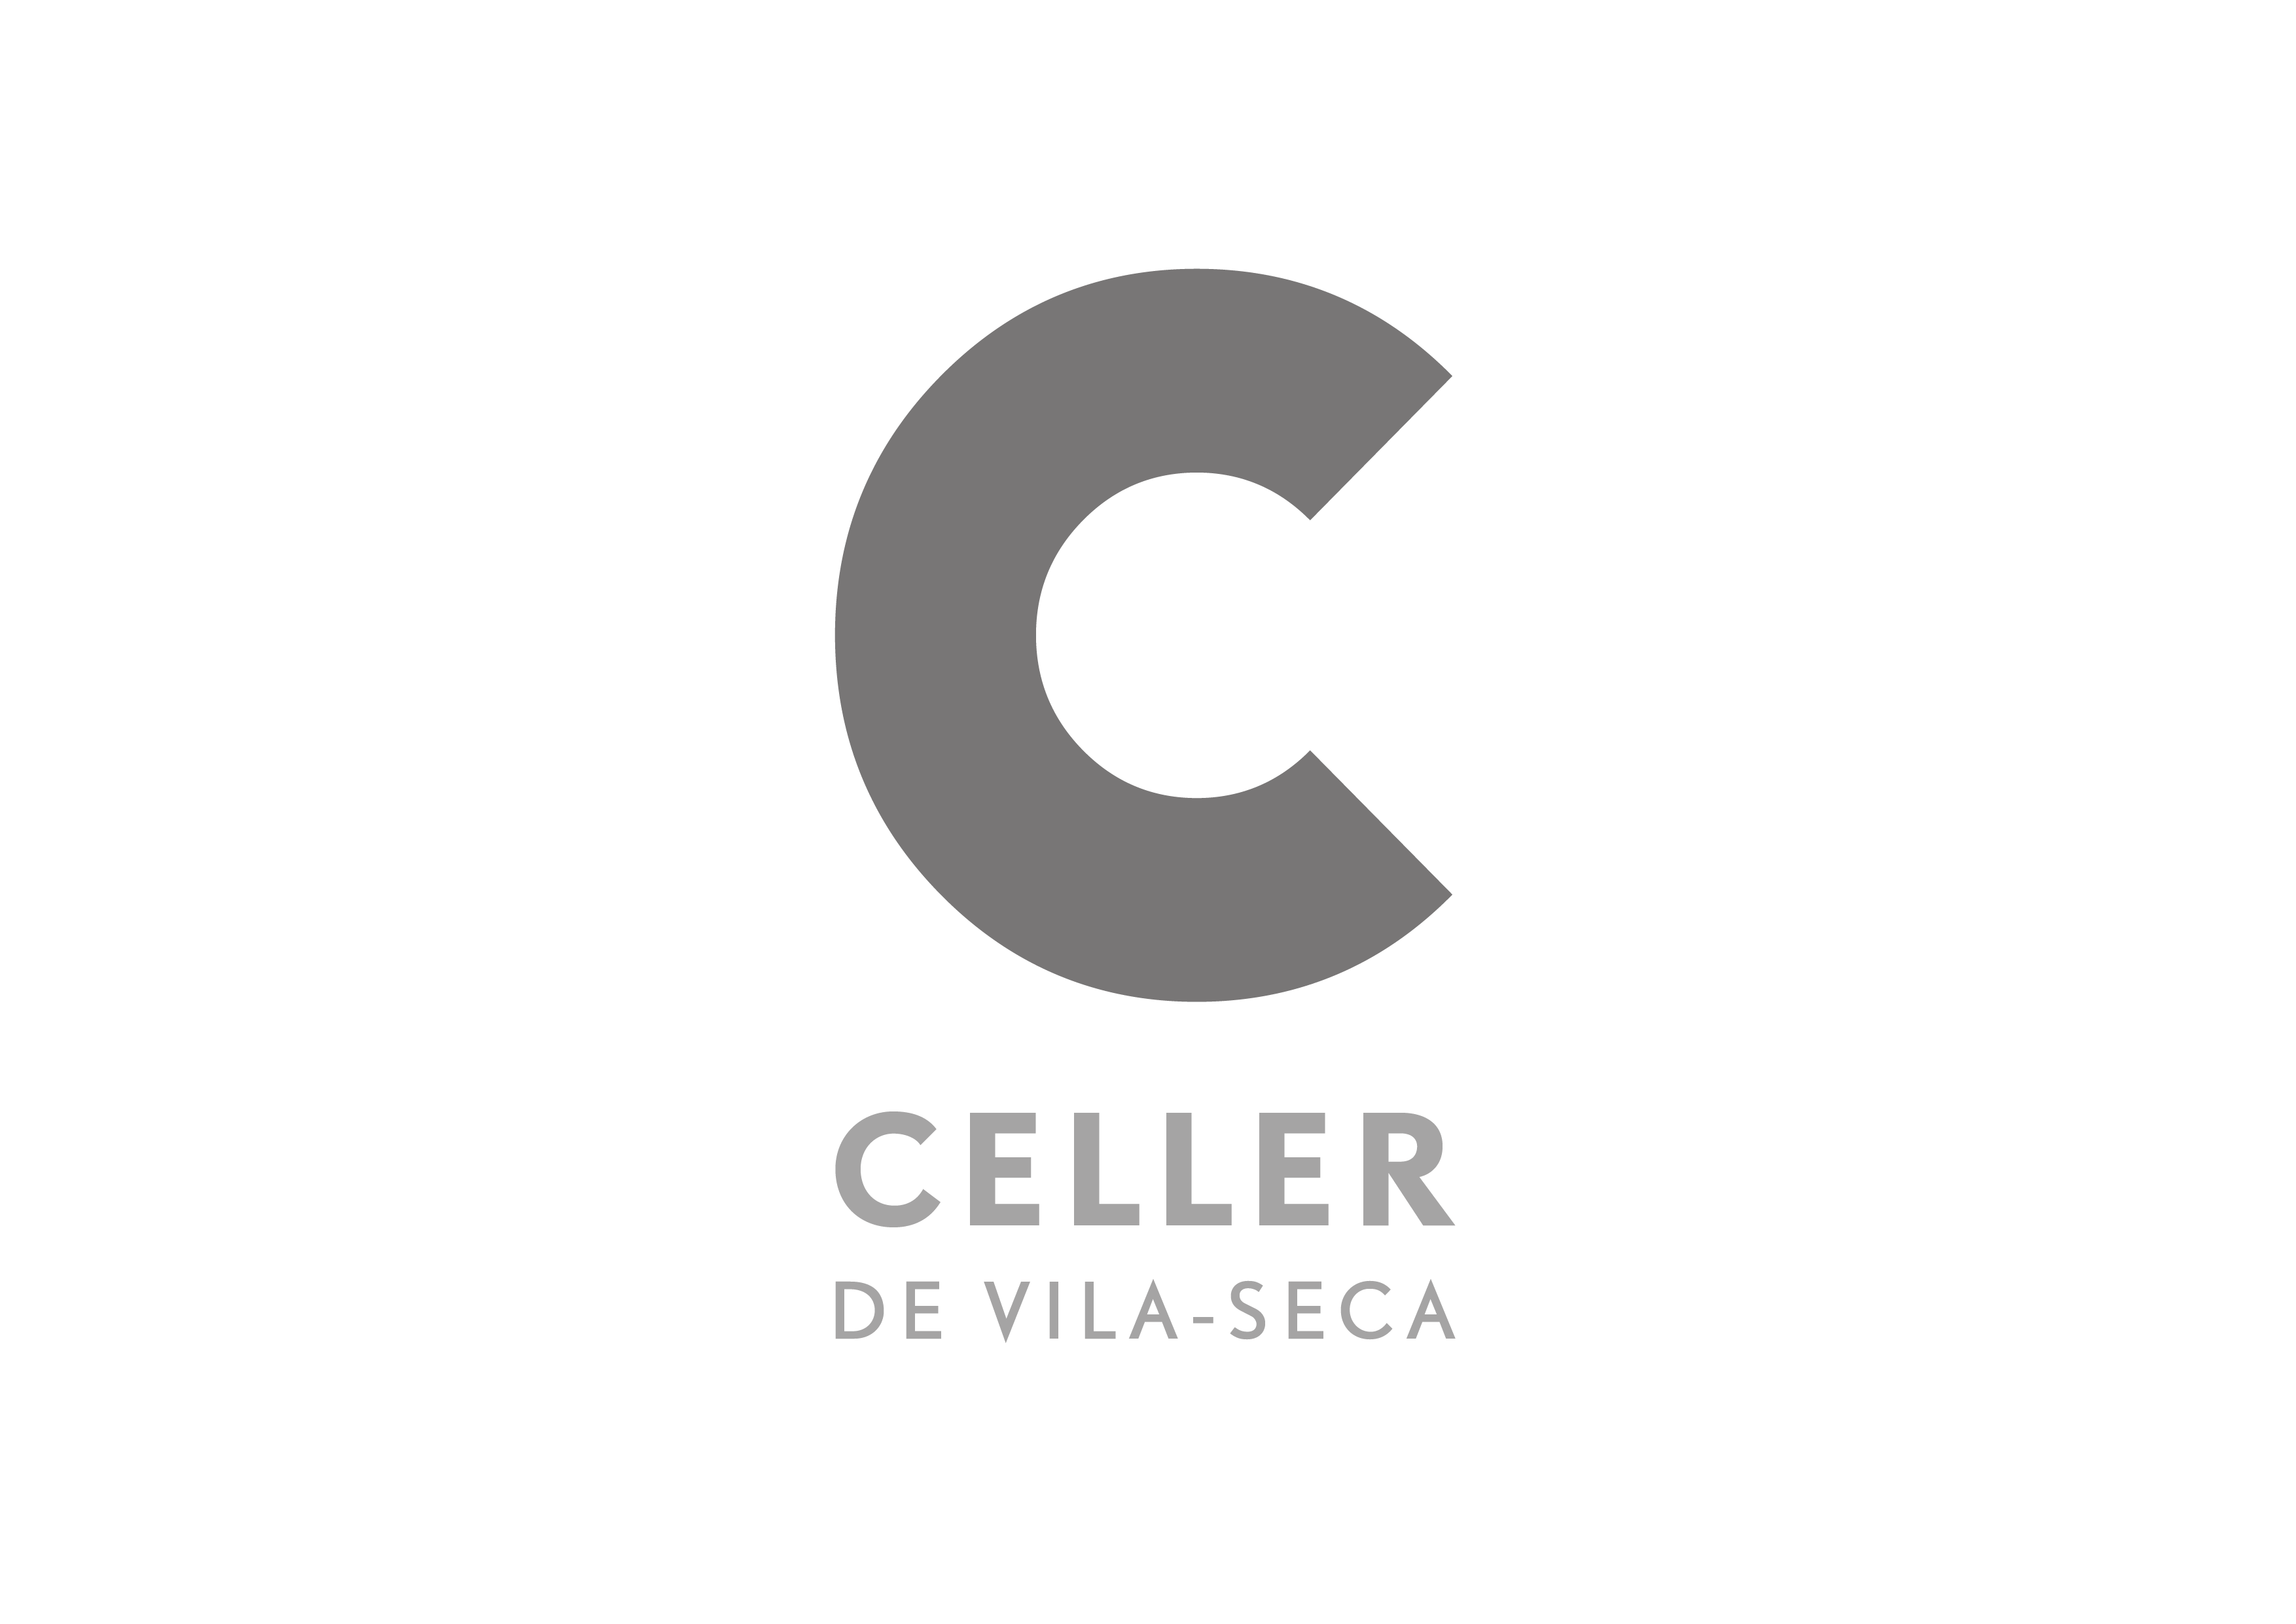 PANDORA_WEB_LOGOS_CELLER-VILA-SECA-01